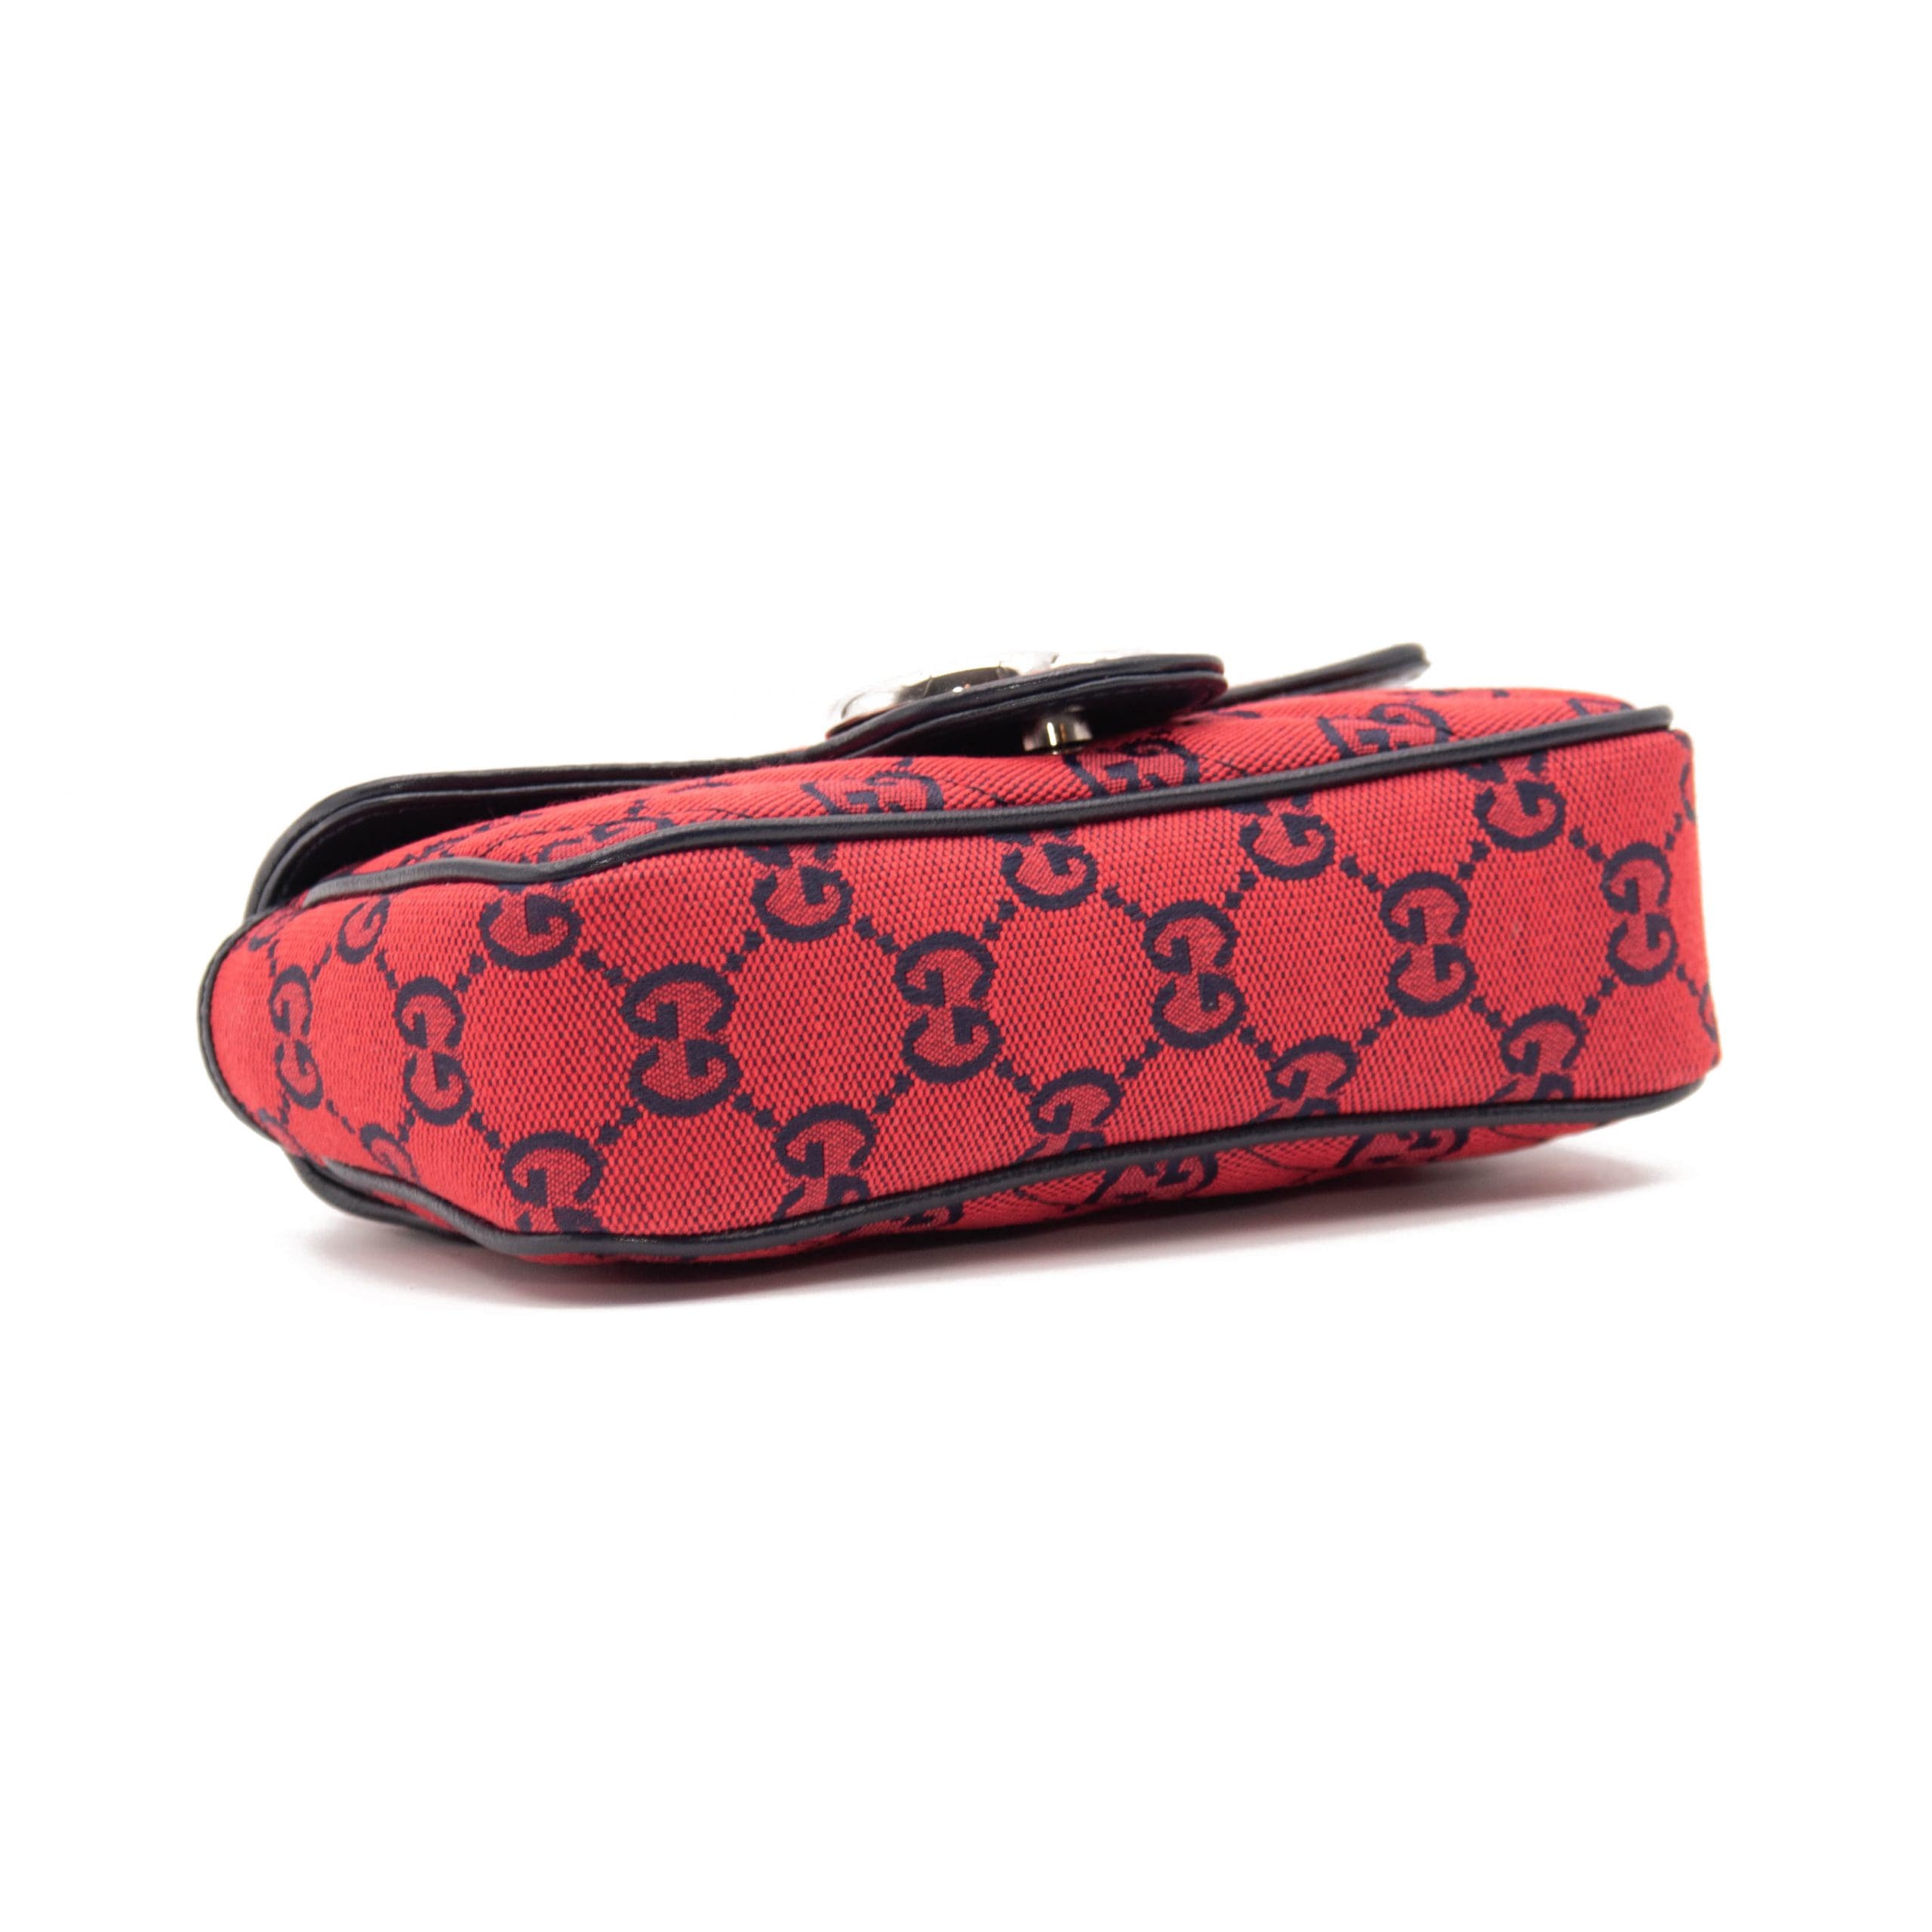 Red and Black Gucci Handbag